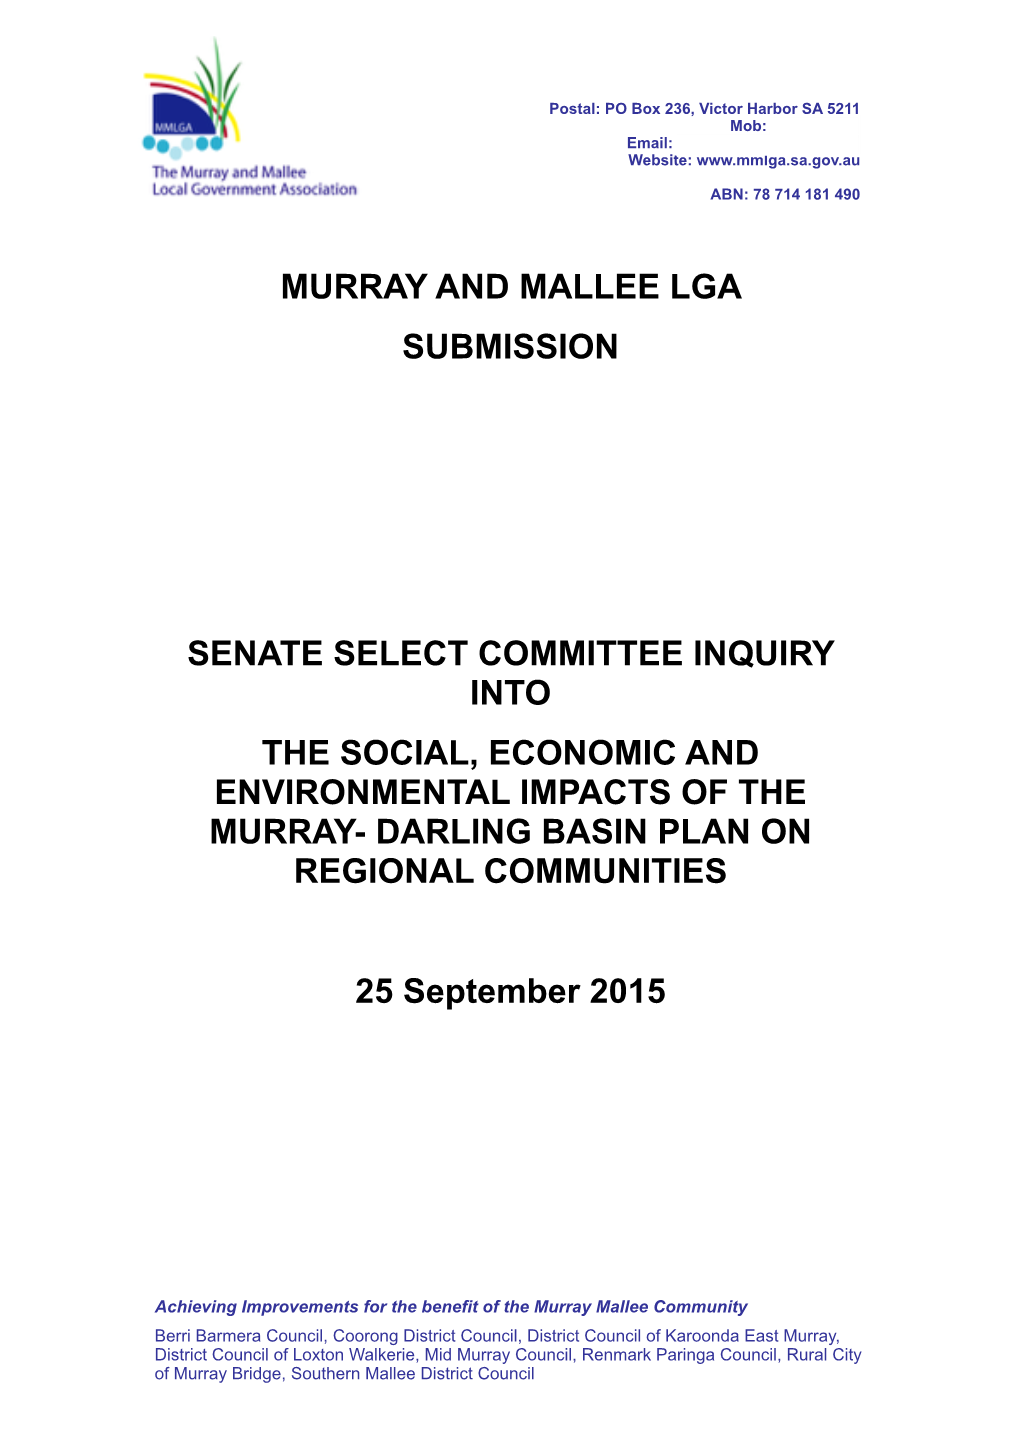 20150924 MMLGA Submission Senate Select Inquiry Copy